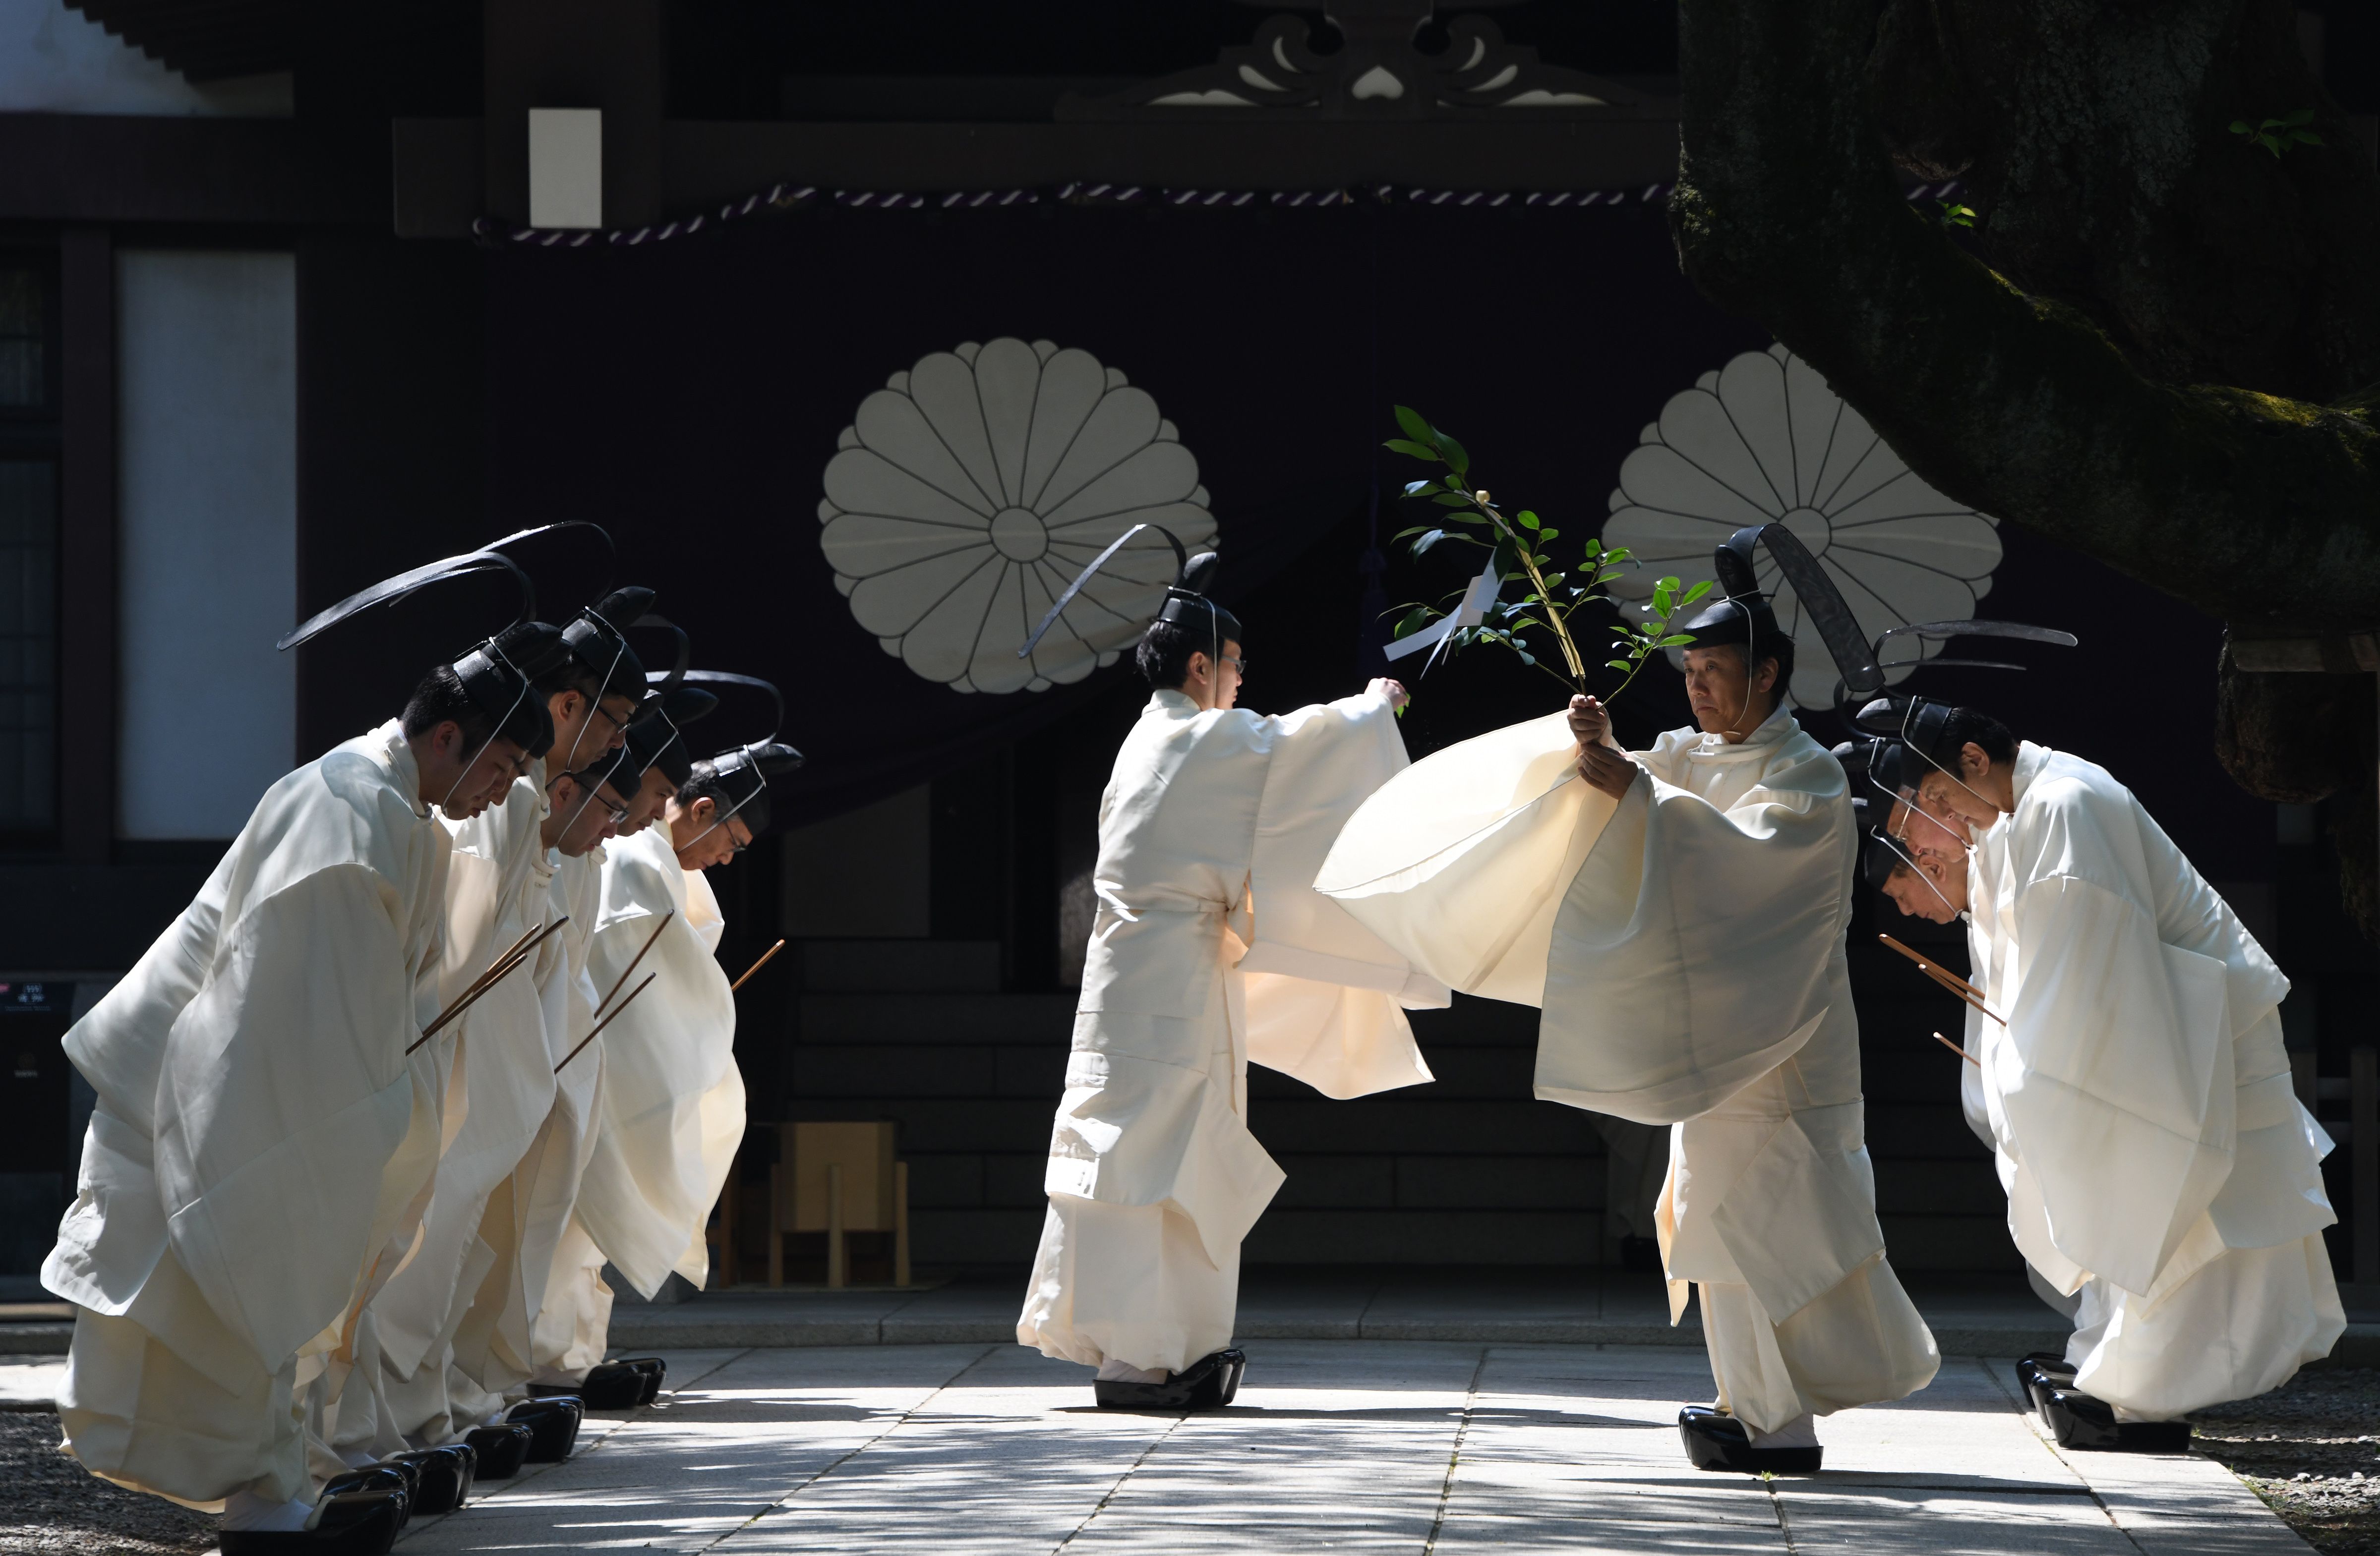 قساوسة يؤدون طقوس ديانة الشنتو فى اليابان